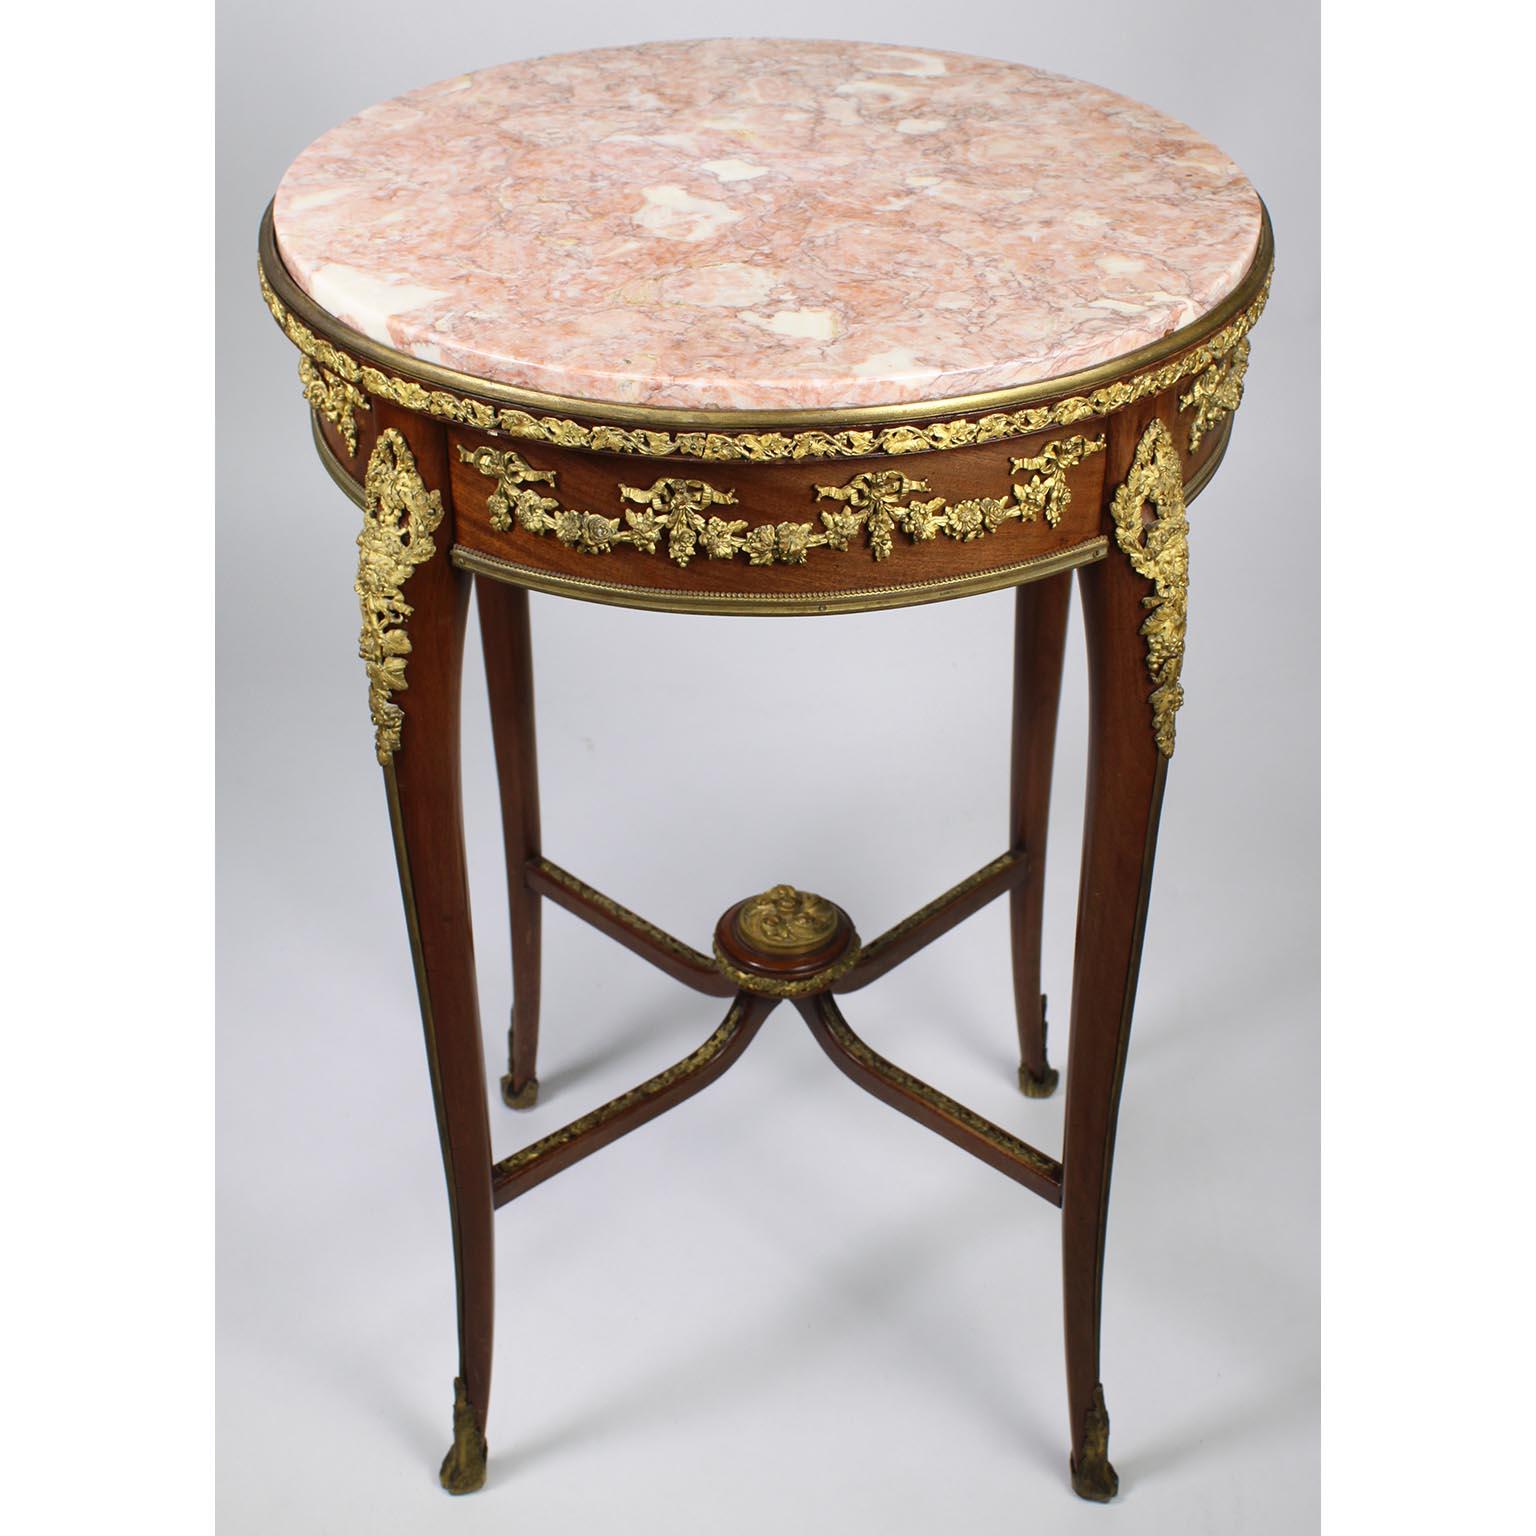 Ein feiner französischer Beistelltisch aus Mahagoni und vergoldeter Bronze (Ormolu) aus der Belle Époque mit Marmorplatte, zugeschrieben François Linke (1855-1946). Der Tisch mit einer einzigen Schublade ist mit einer runden, geäderten Platte aus